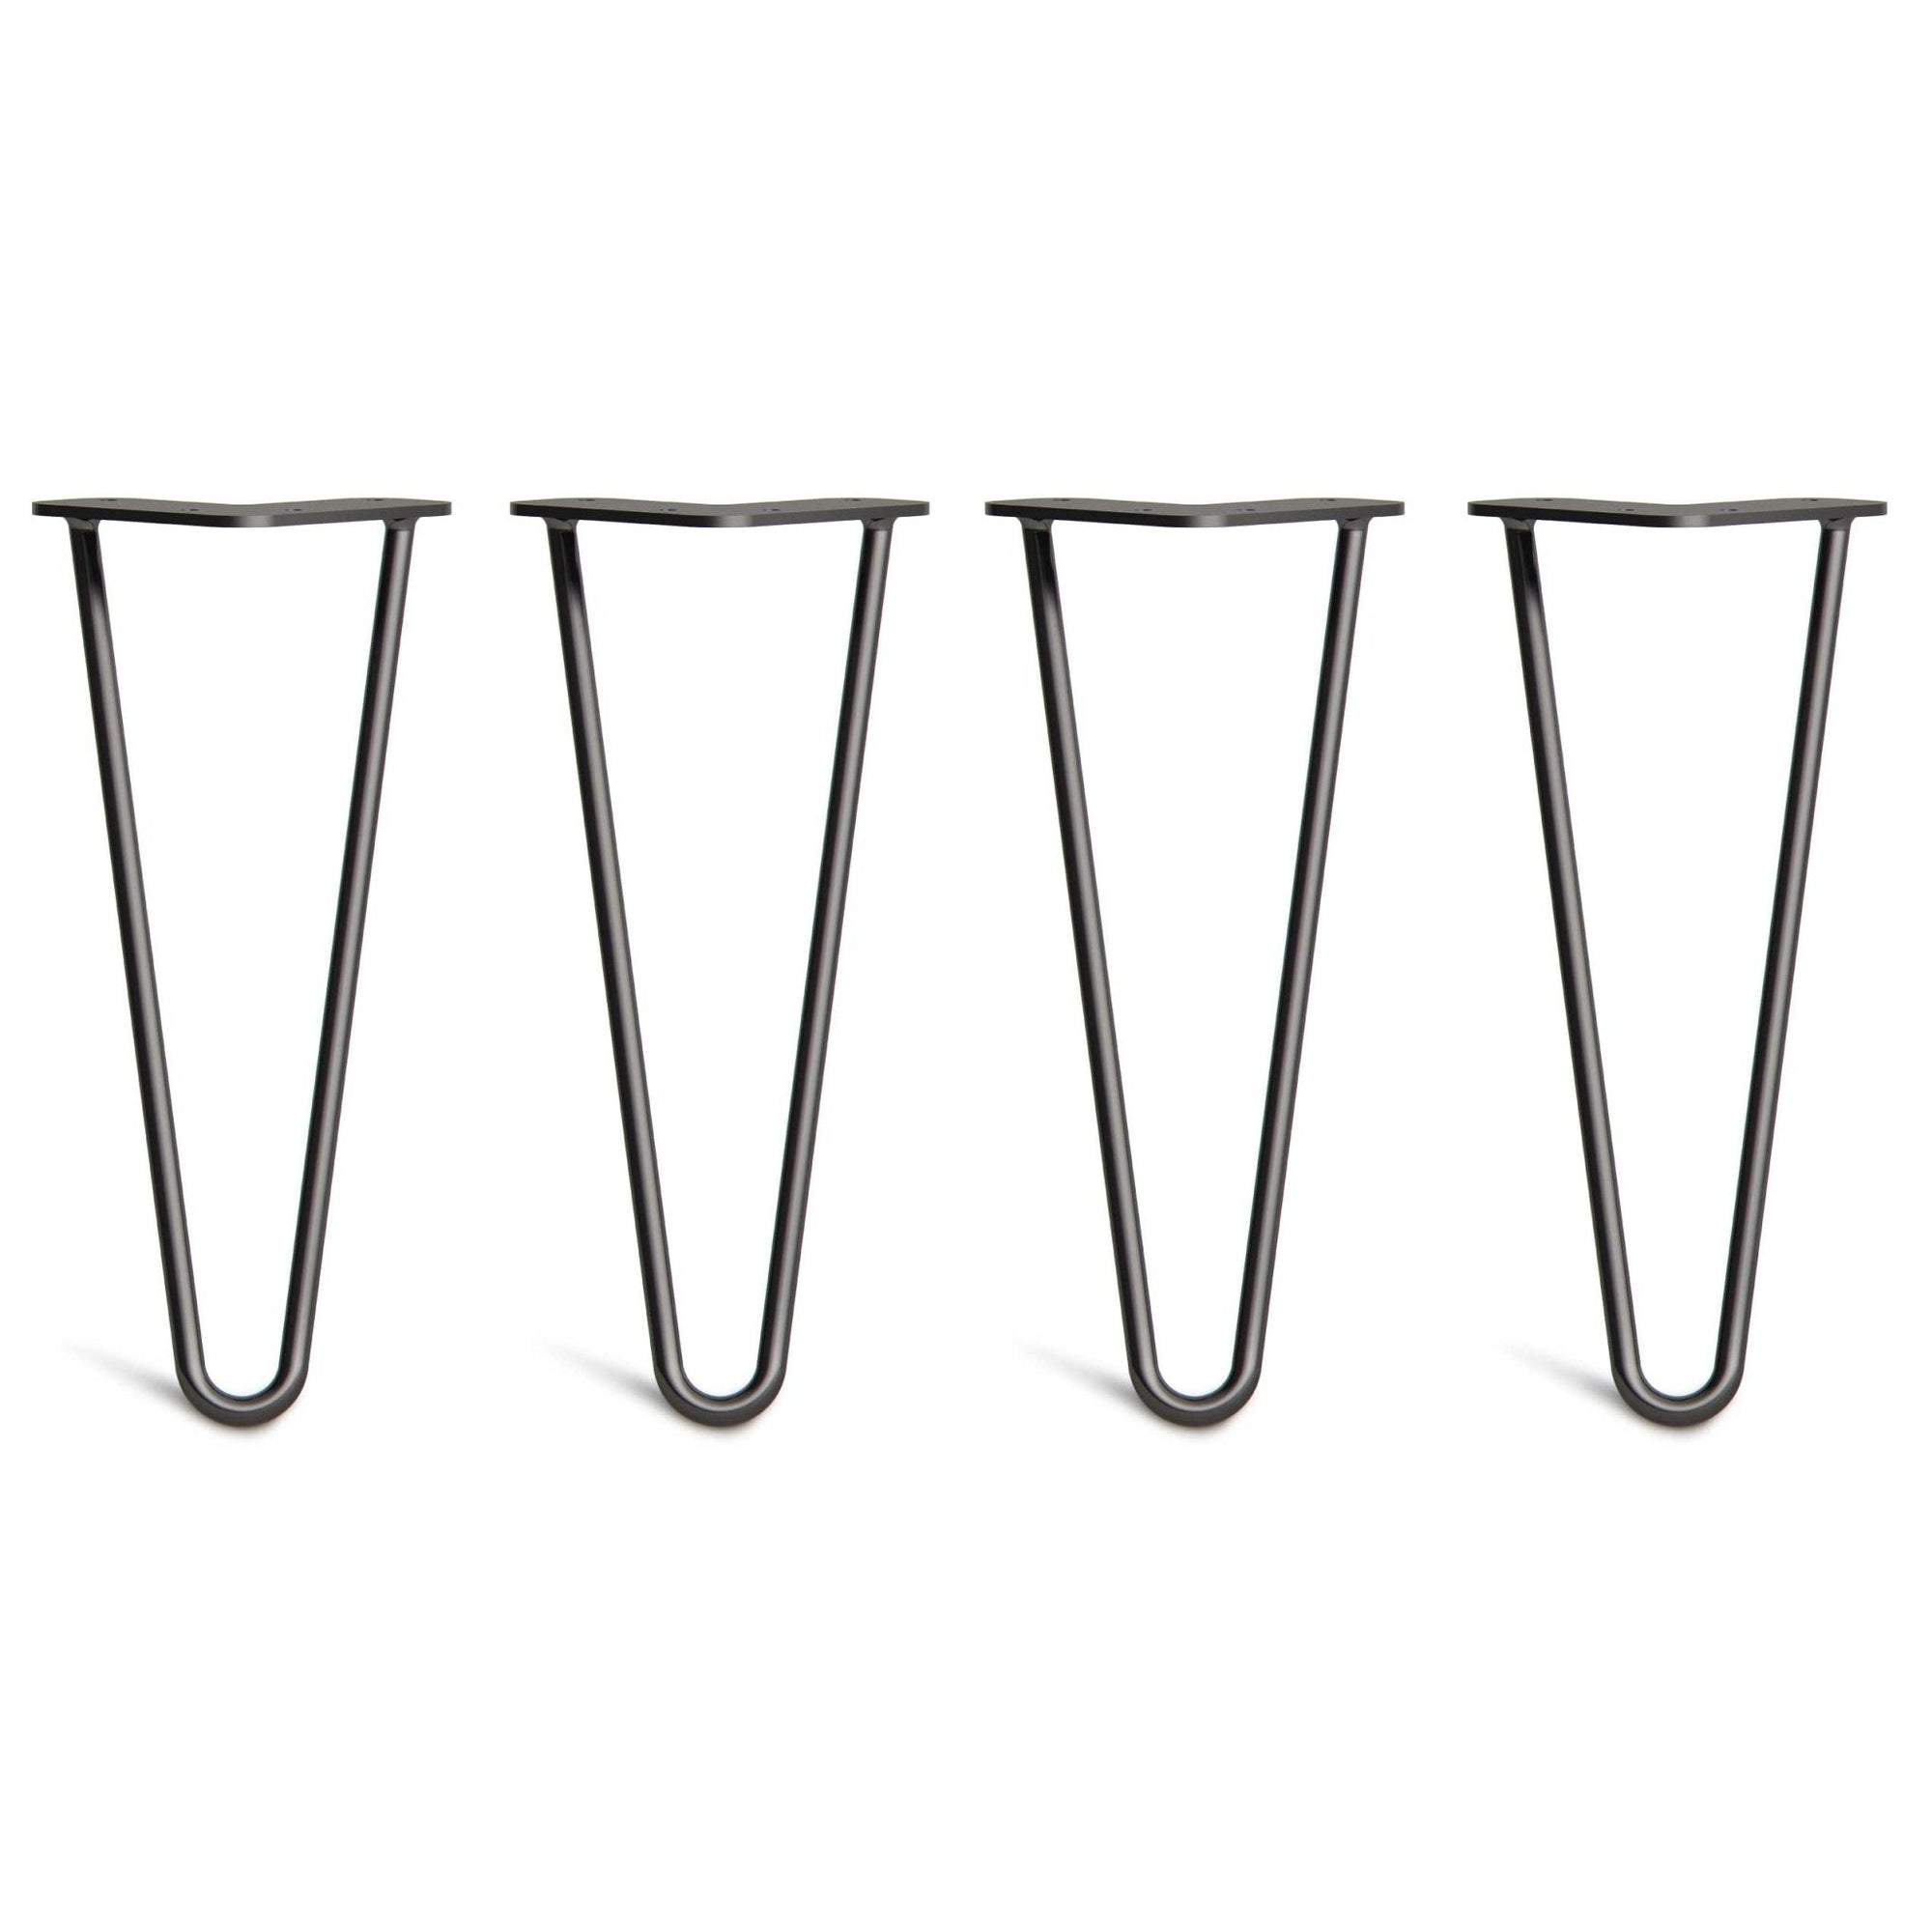 Metal Coffee Table Legs | Hairpin Steel Legs | 12” - 30 CM